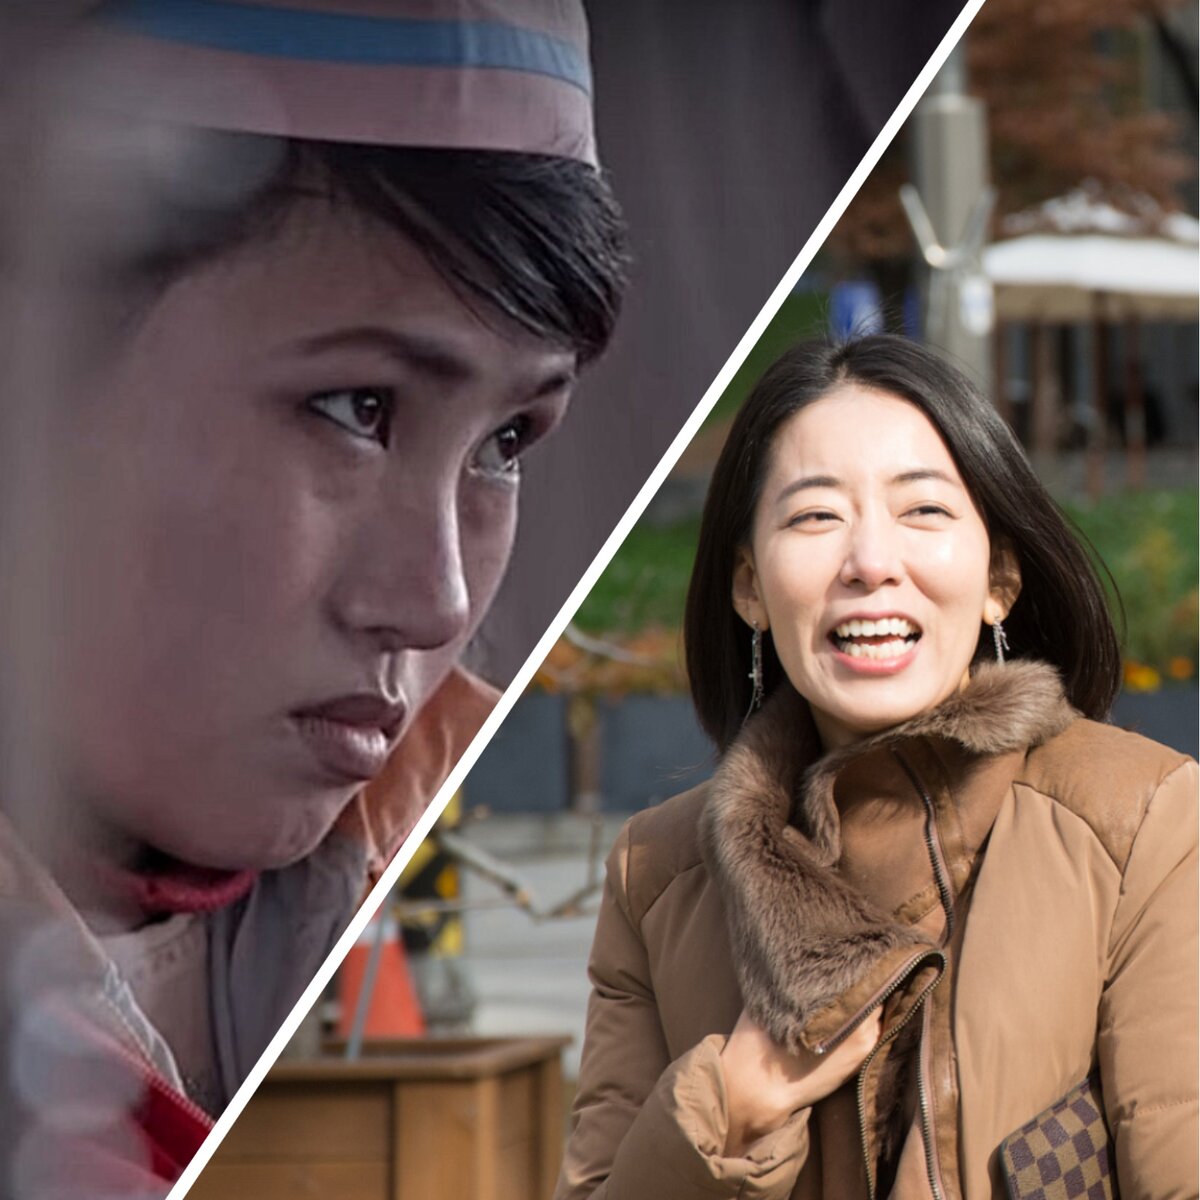 Как выглядят люди в Северной и Южной Корее? Сраниваю фото реальных корейцев из двух стран